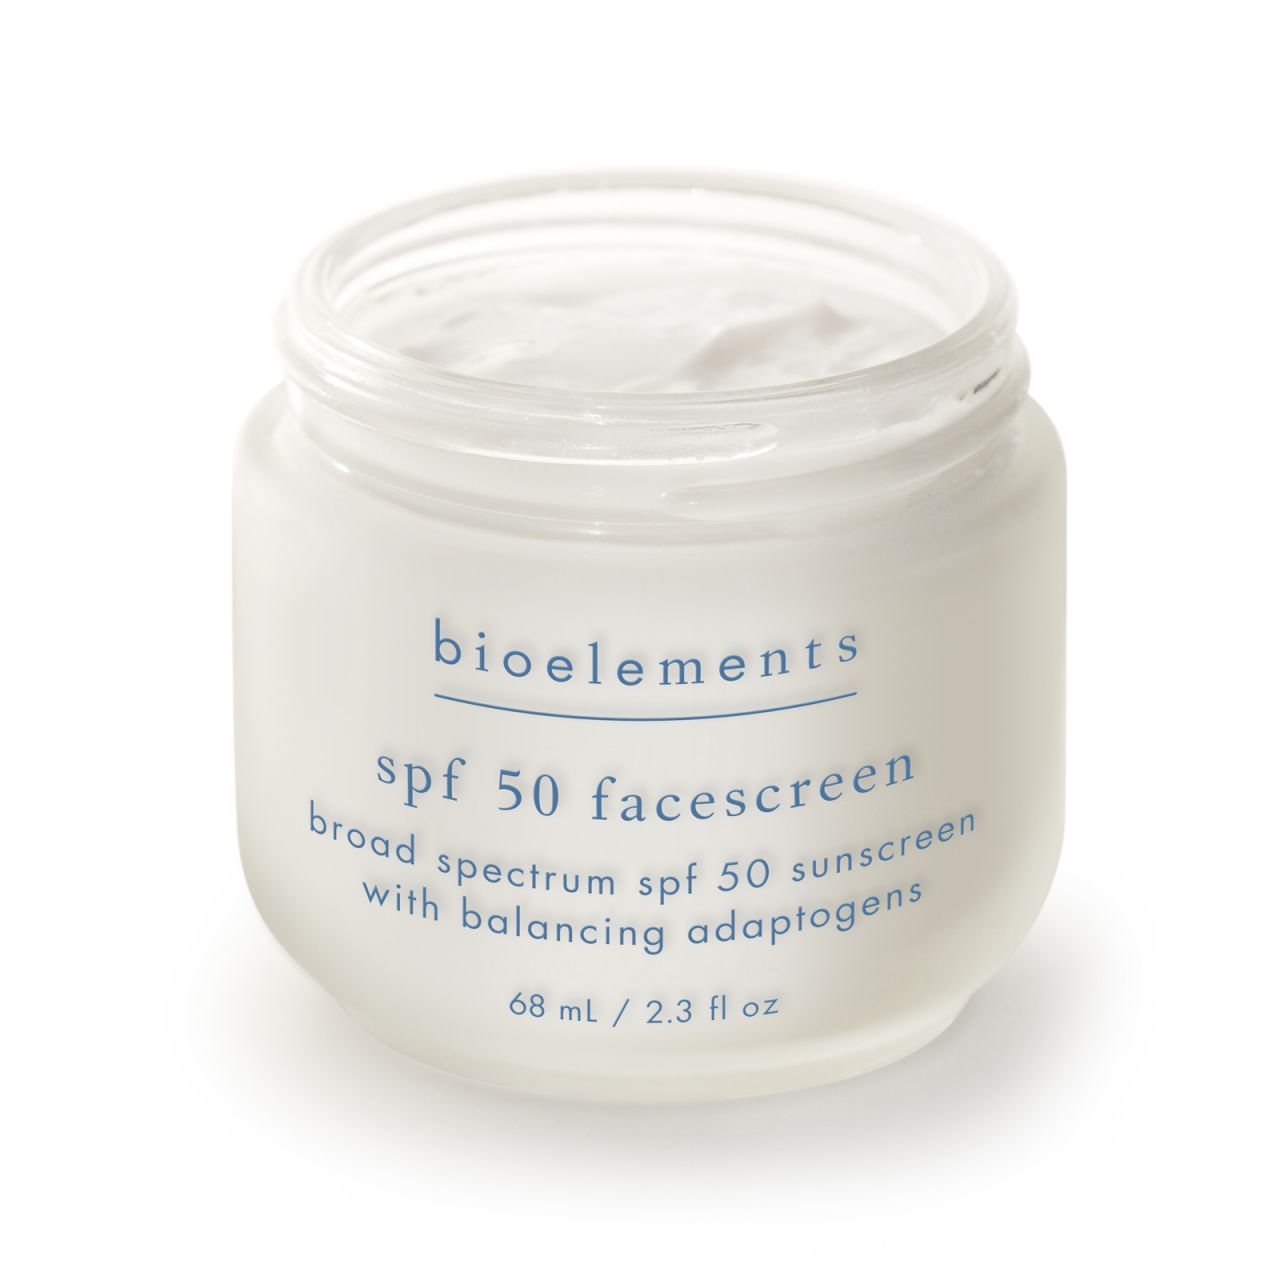 Bioelements - Сонцезахисний крем для шкіри SPF 50 SPF 50 FaceScreen - Зображення 1